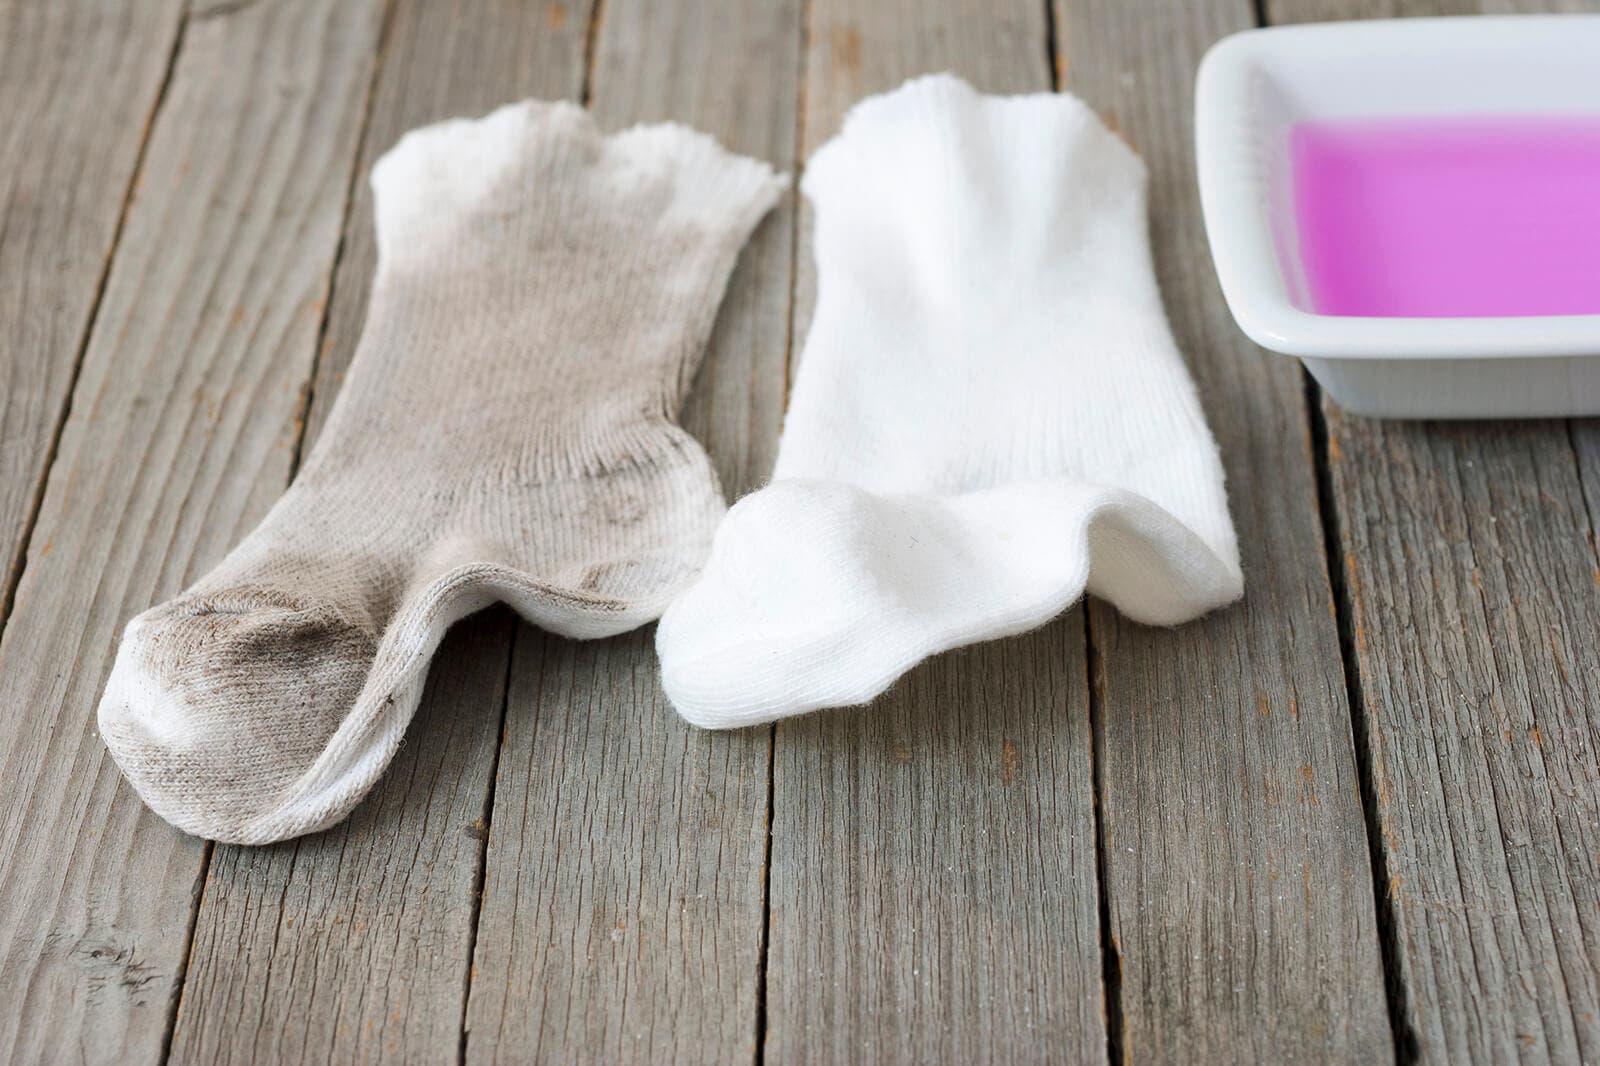 Vergleich von schmutzigen Socken und gereinigten Socken